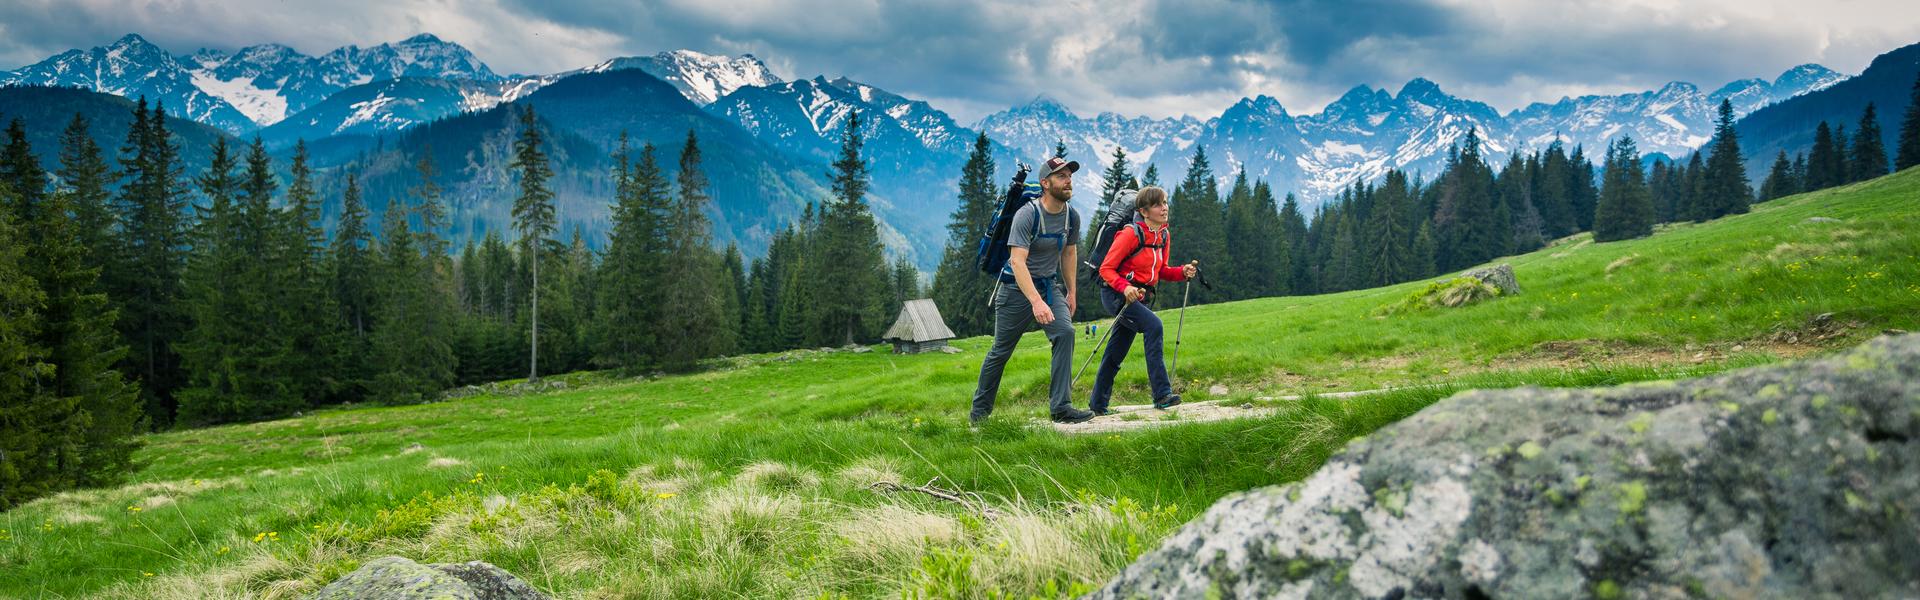 Dwie osoby w strojach sportowych z kijkami do nordick walkingu, spacerują po zboczu góry. W tle widać góry.